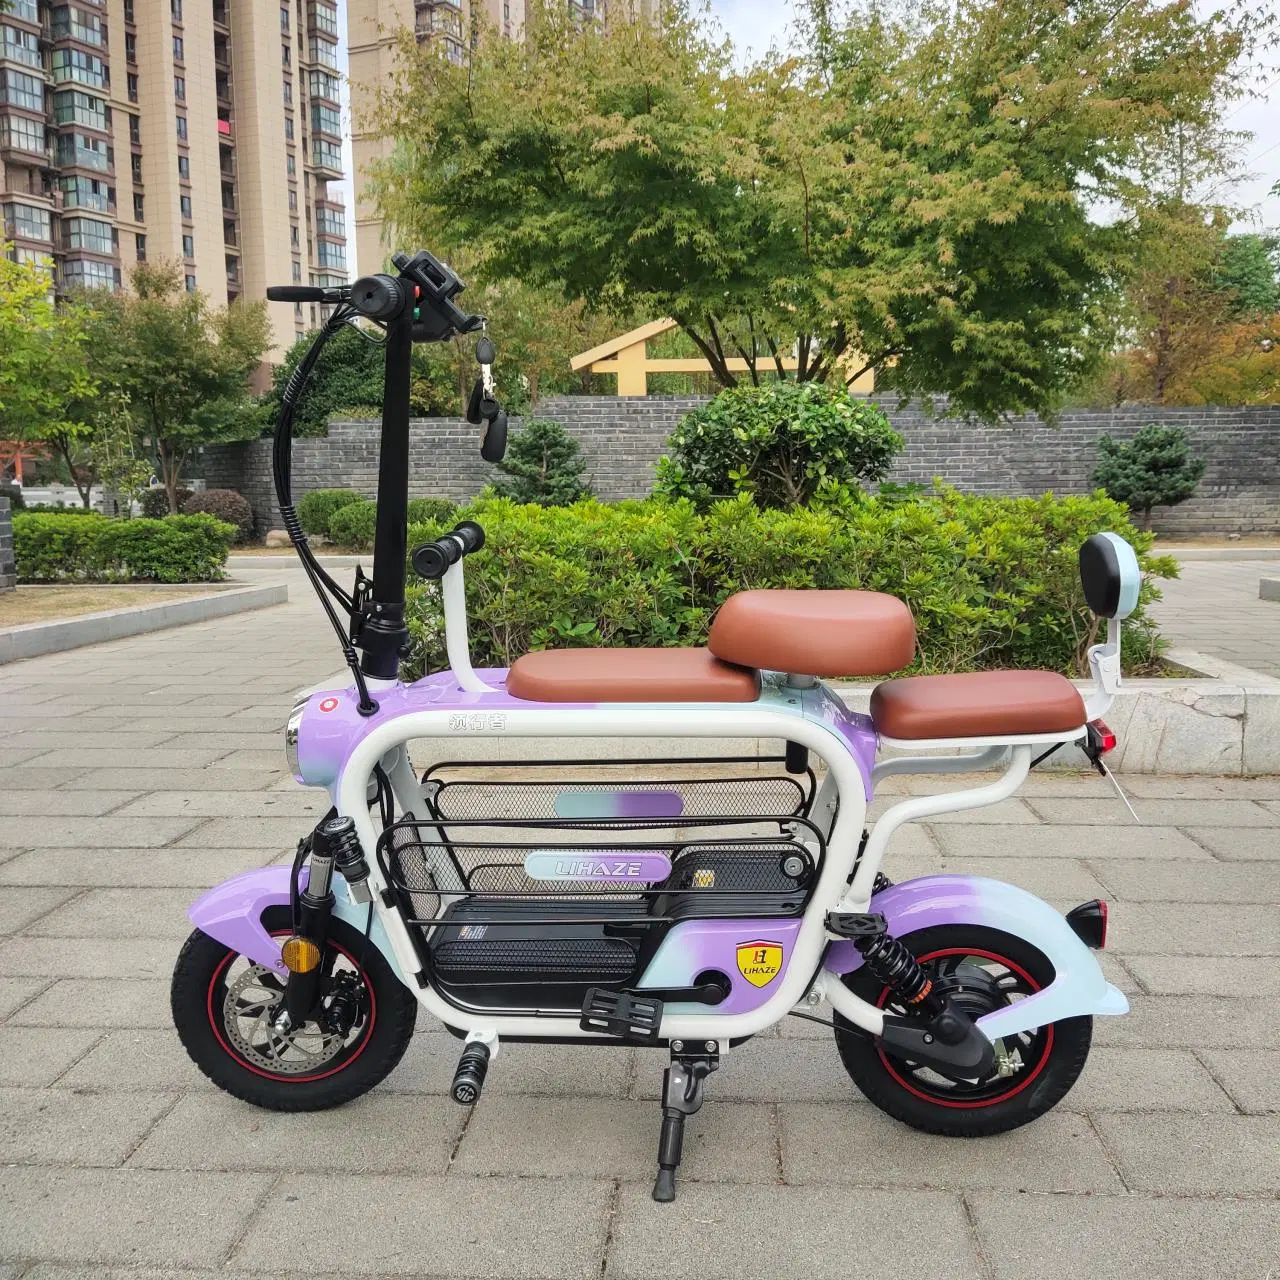 Vélo électrique 12 pouces 350W avec batterie au lithium, très demandé pour les voyages parent-enfant.